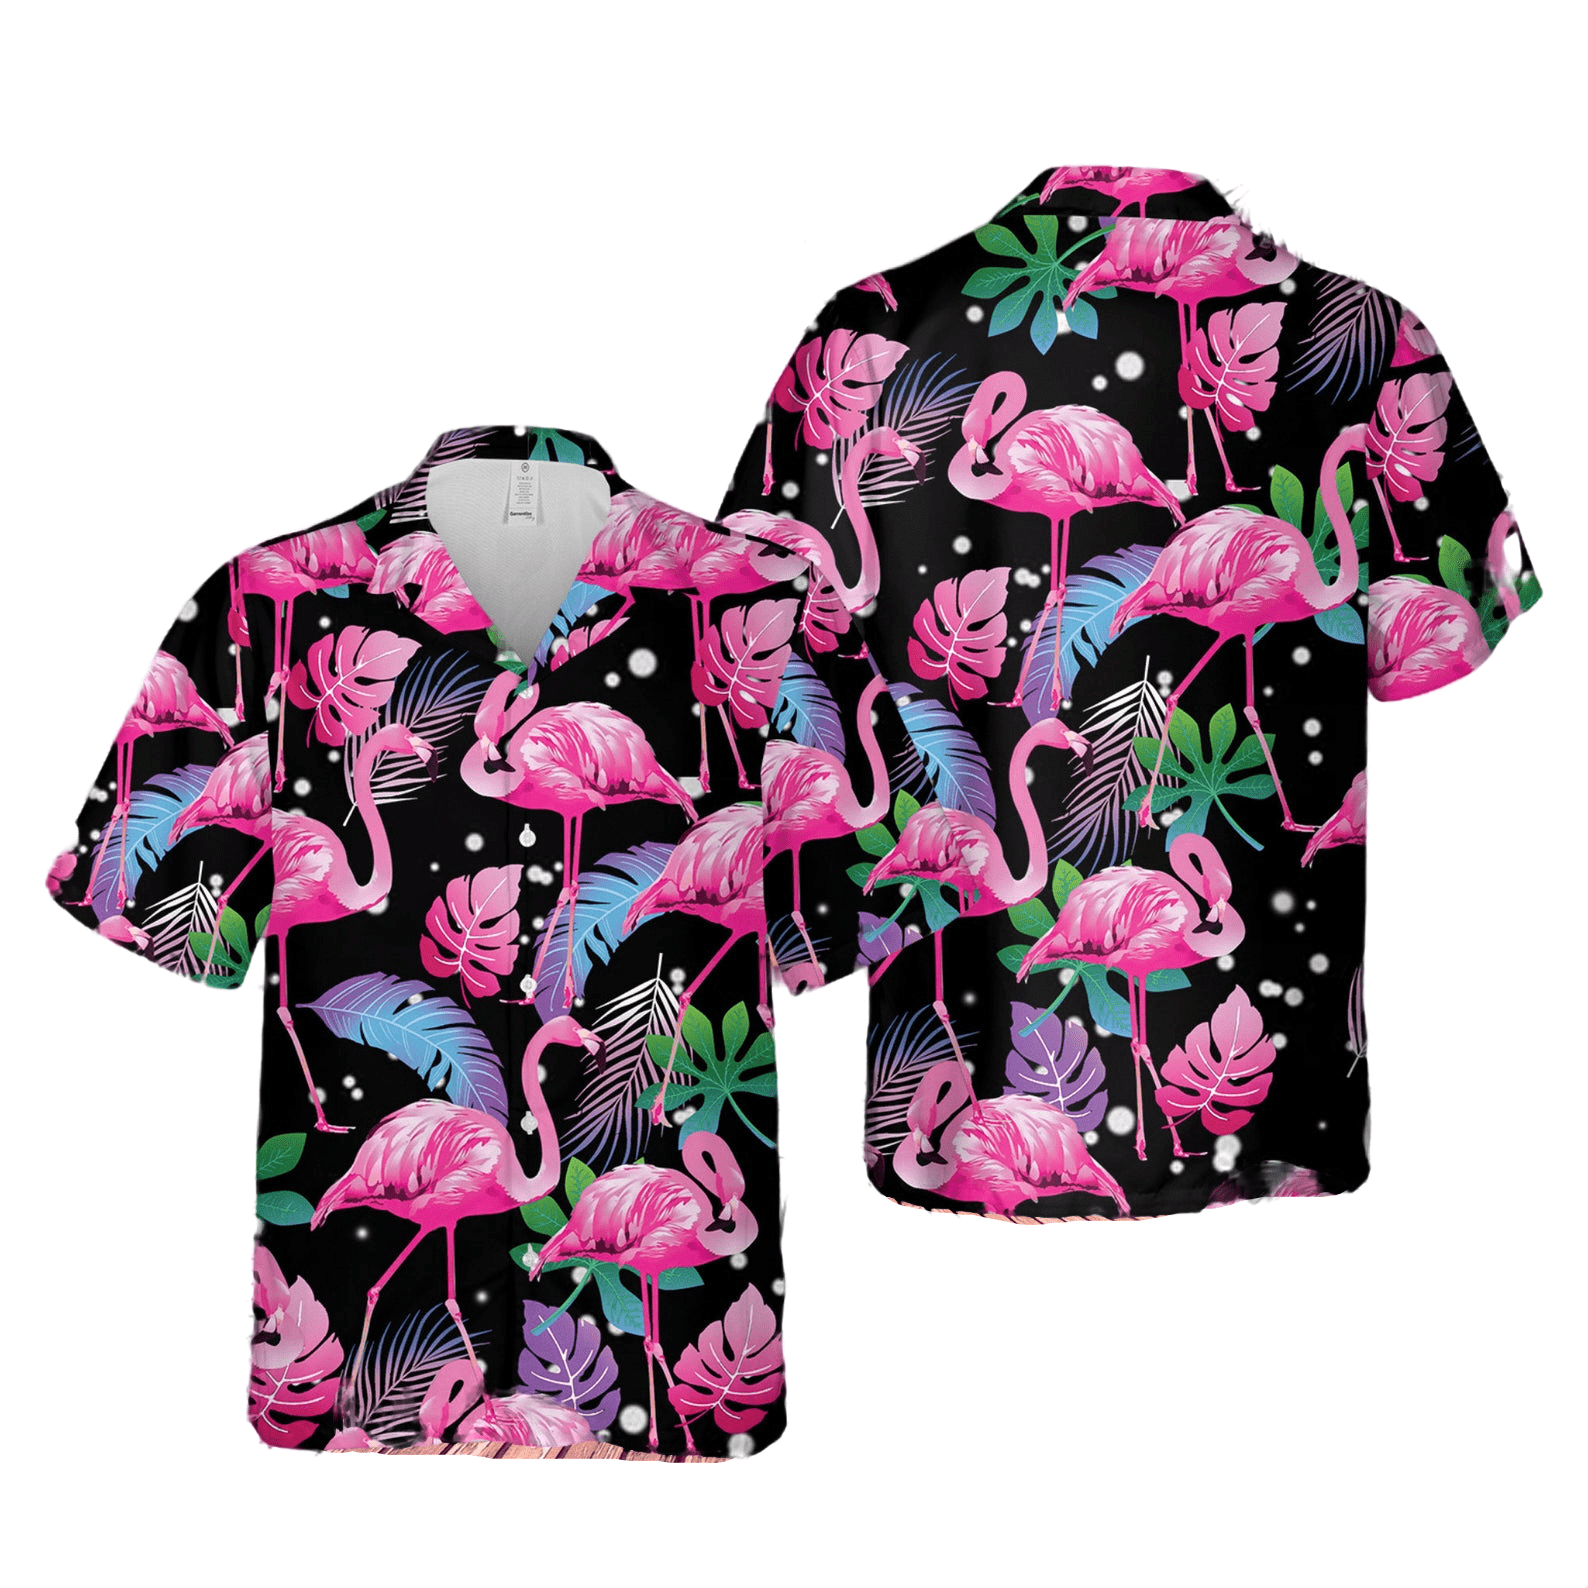 6 Coolest Hawaiian Shirt Designs For the Summer